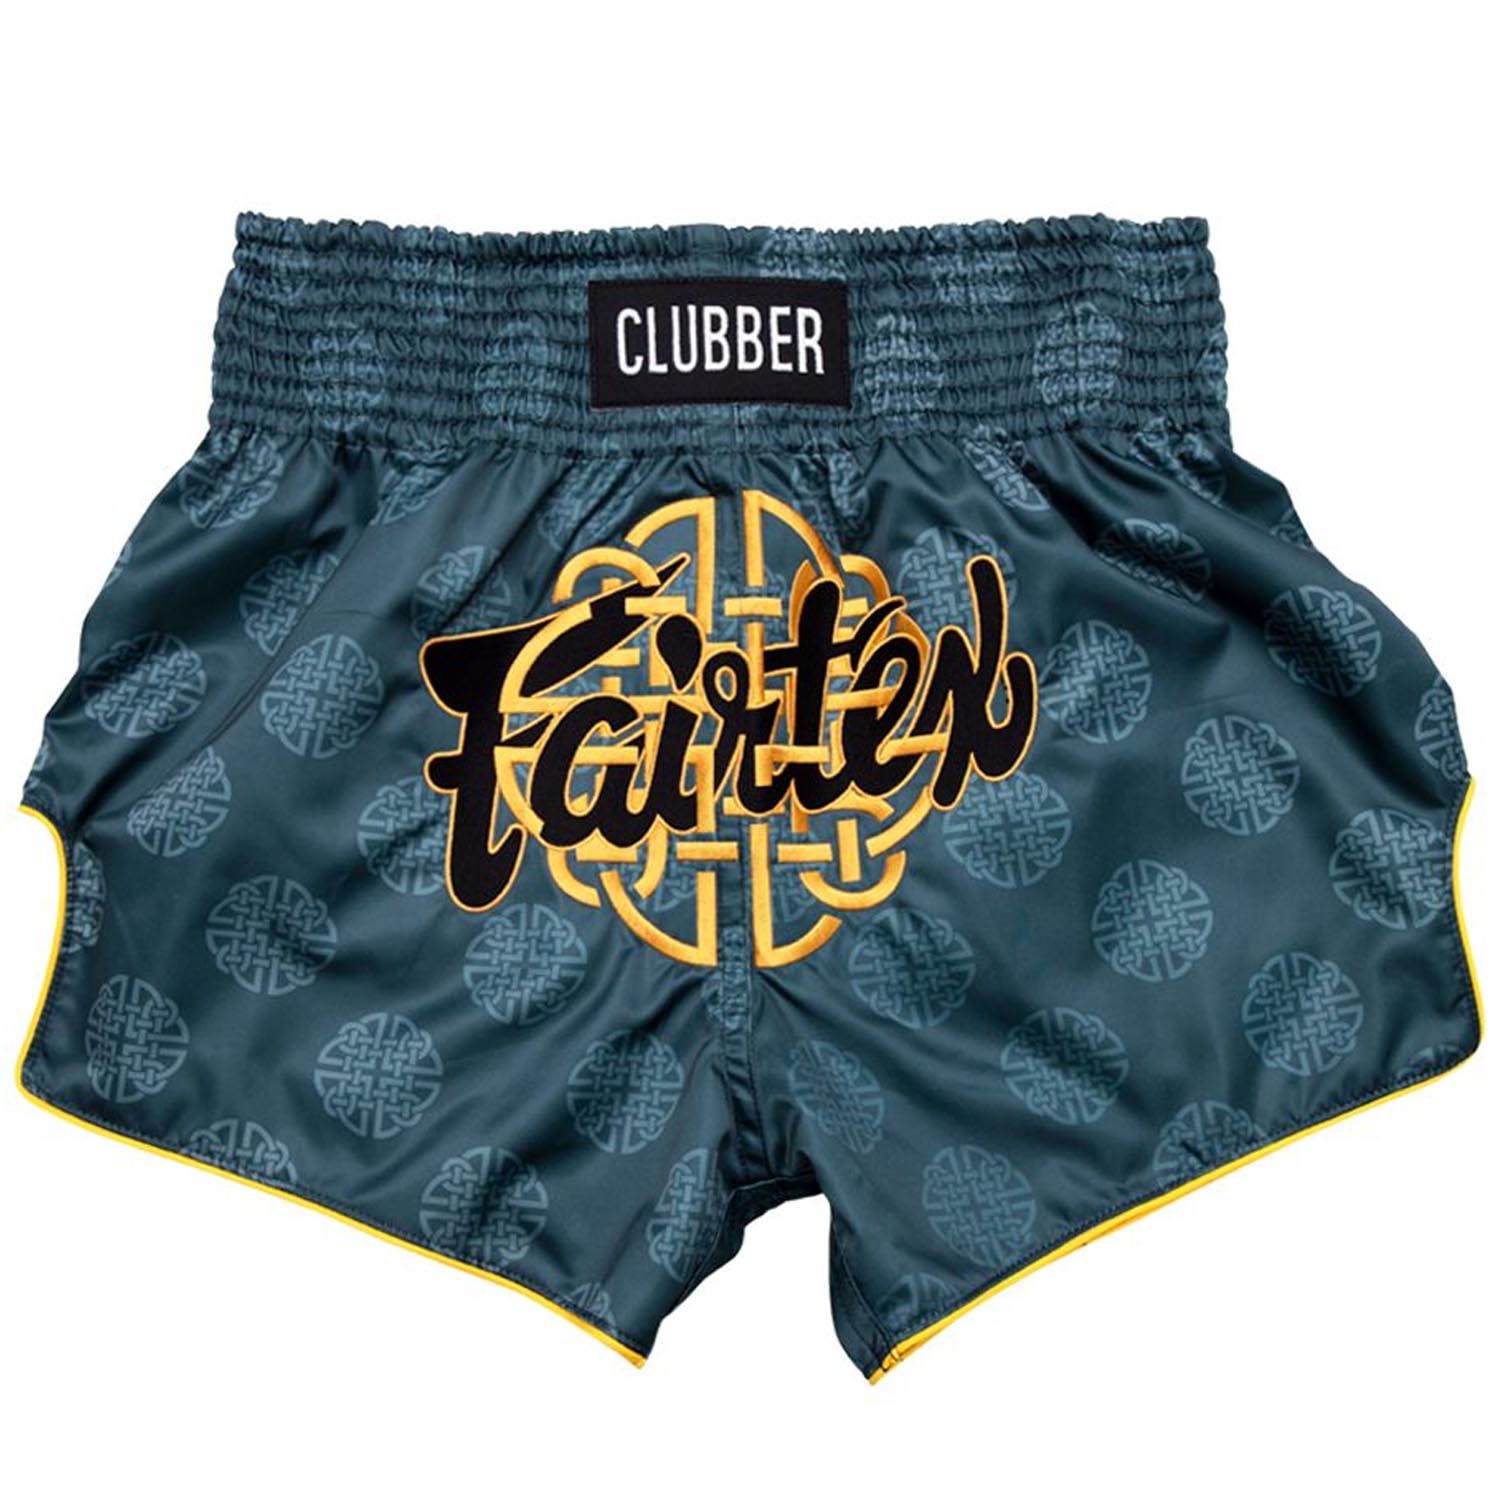 Fairtex Muay Shorts, Clubber, BS1915, S